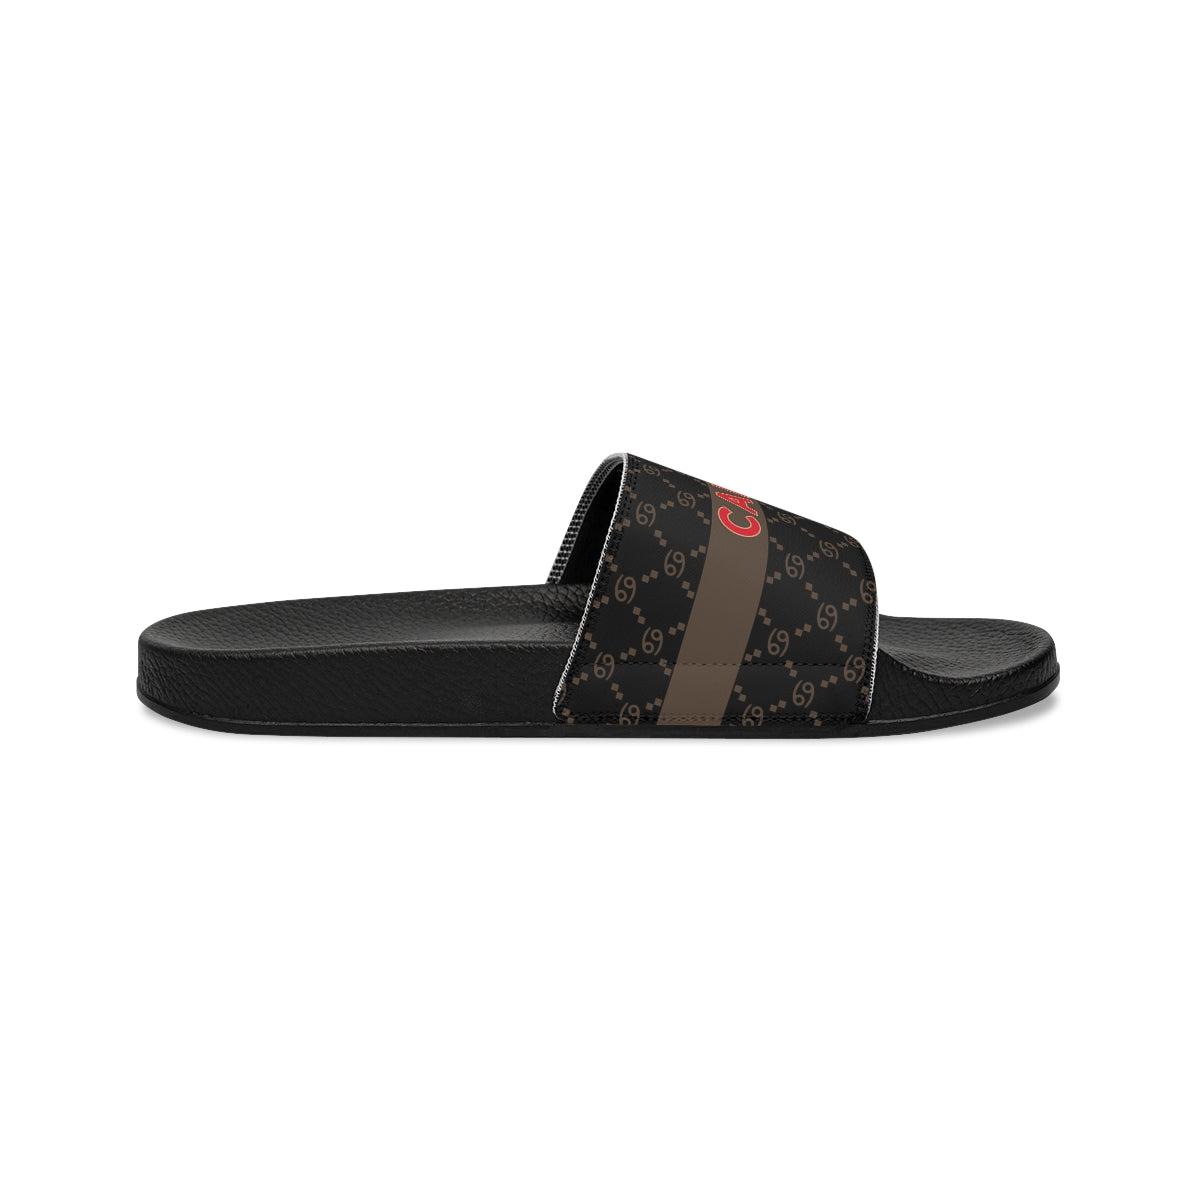 Cancer G-Style Slide Sandals - Black